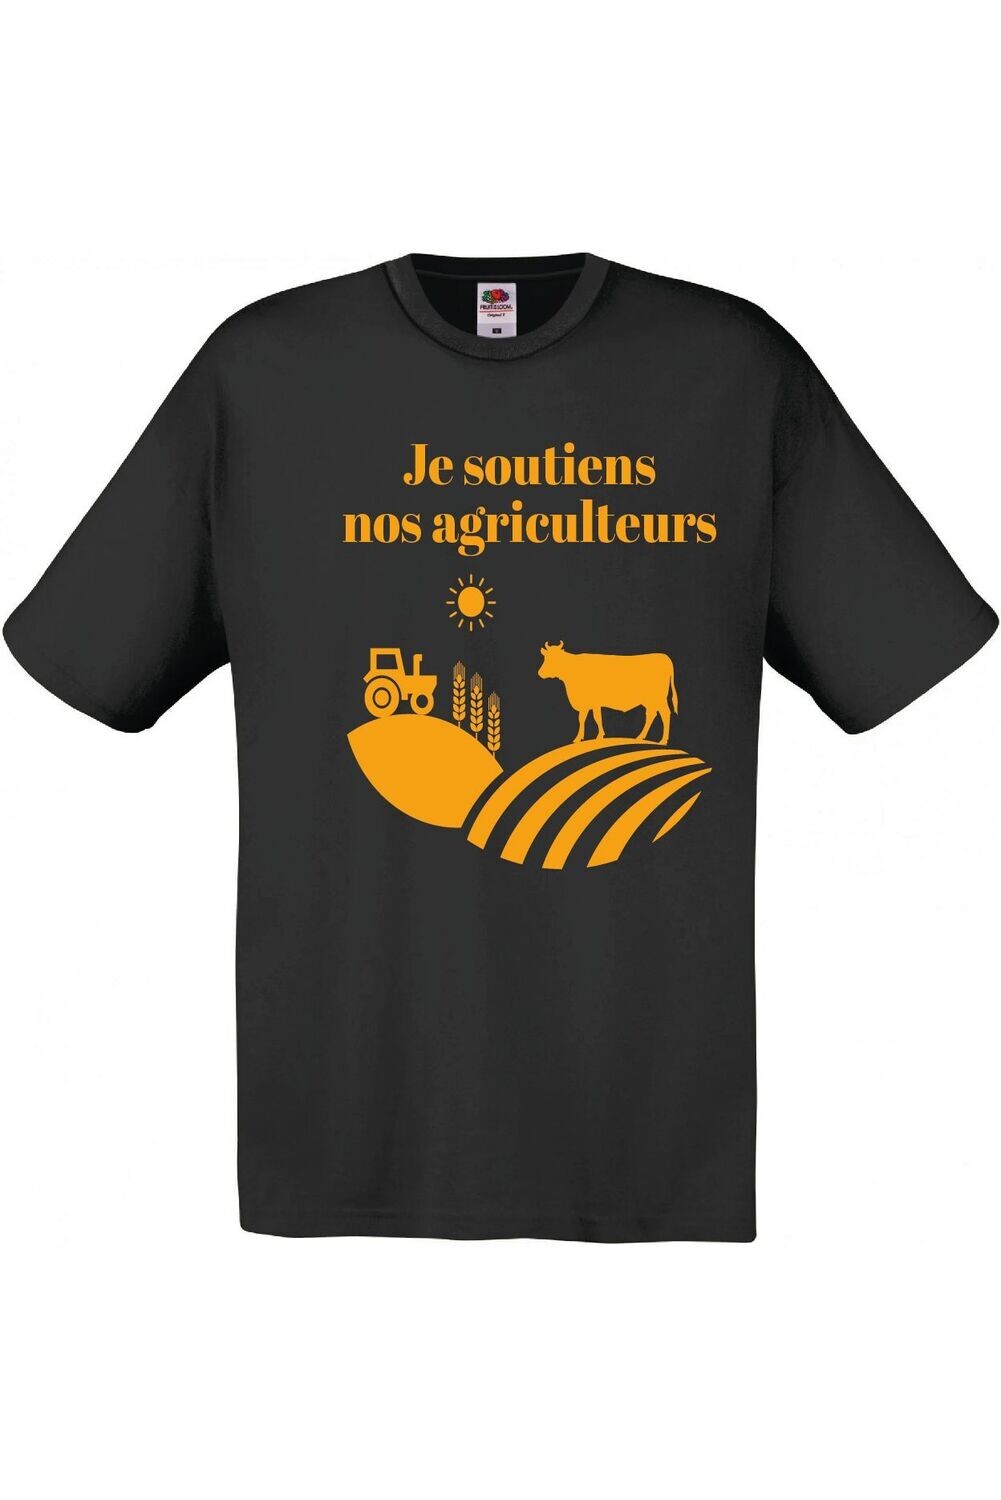 T-shirt - Je soutiens nos agriculteurs